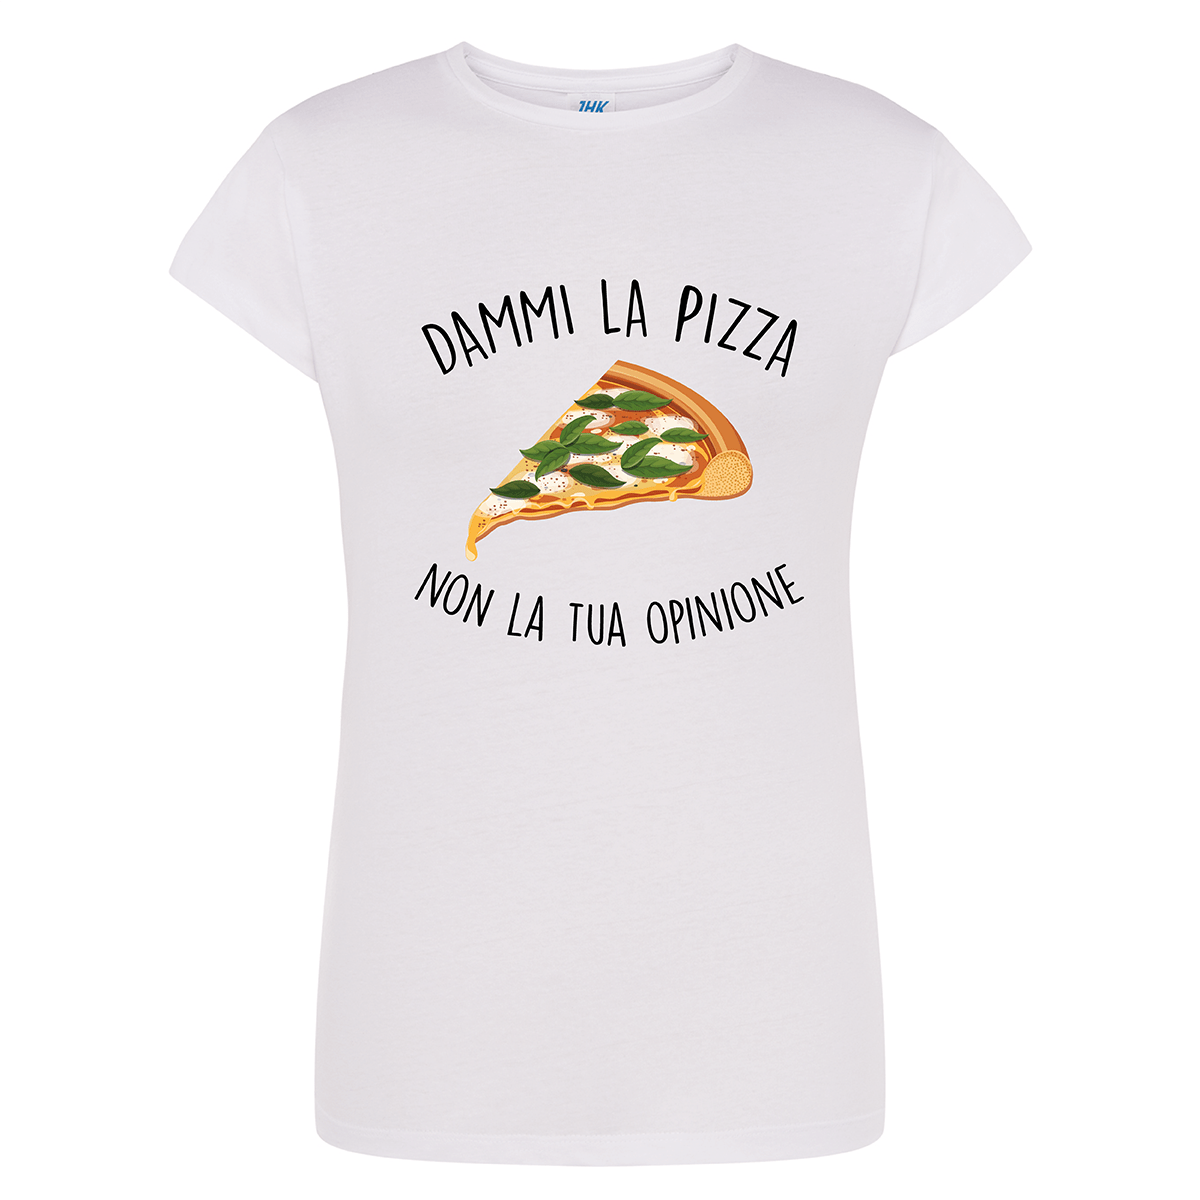 Lol T-Shirt T-shirt s / bianco Dammi la pizza non la tua opinione